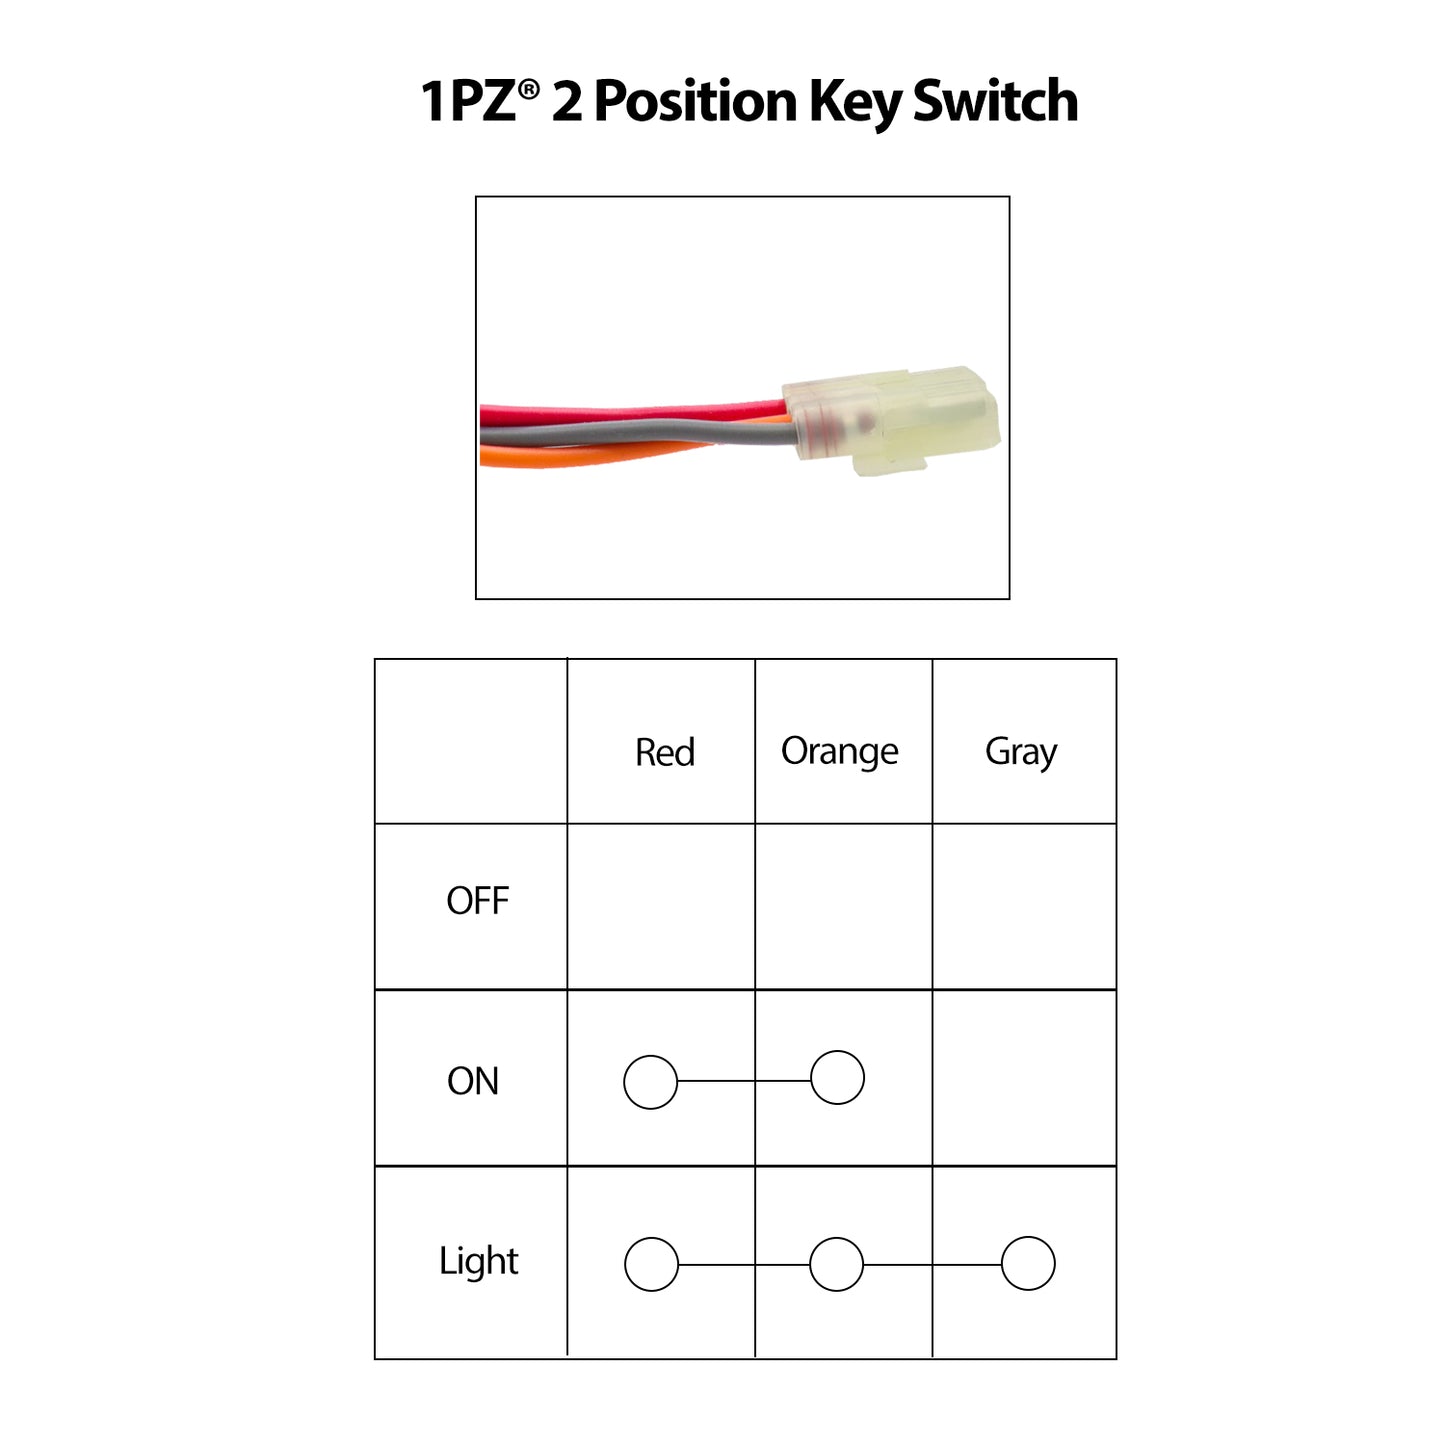 1PZ LZ4-K01 Ignition Key Switch for SUZUKI LT-Z400 Quadsport LTZ400 LTZ400Z 2003-2007 / LTF500F 1998-2002 / LTA500F 2000-2001 / LTZ250 QUADSPORT 2004-2009 /LTZ250 OZARK 2002-2009